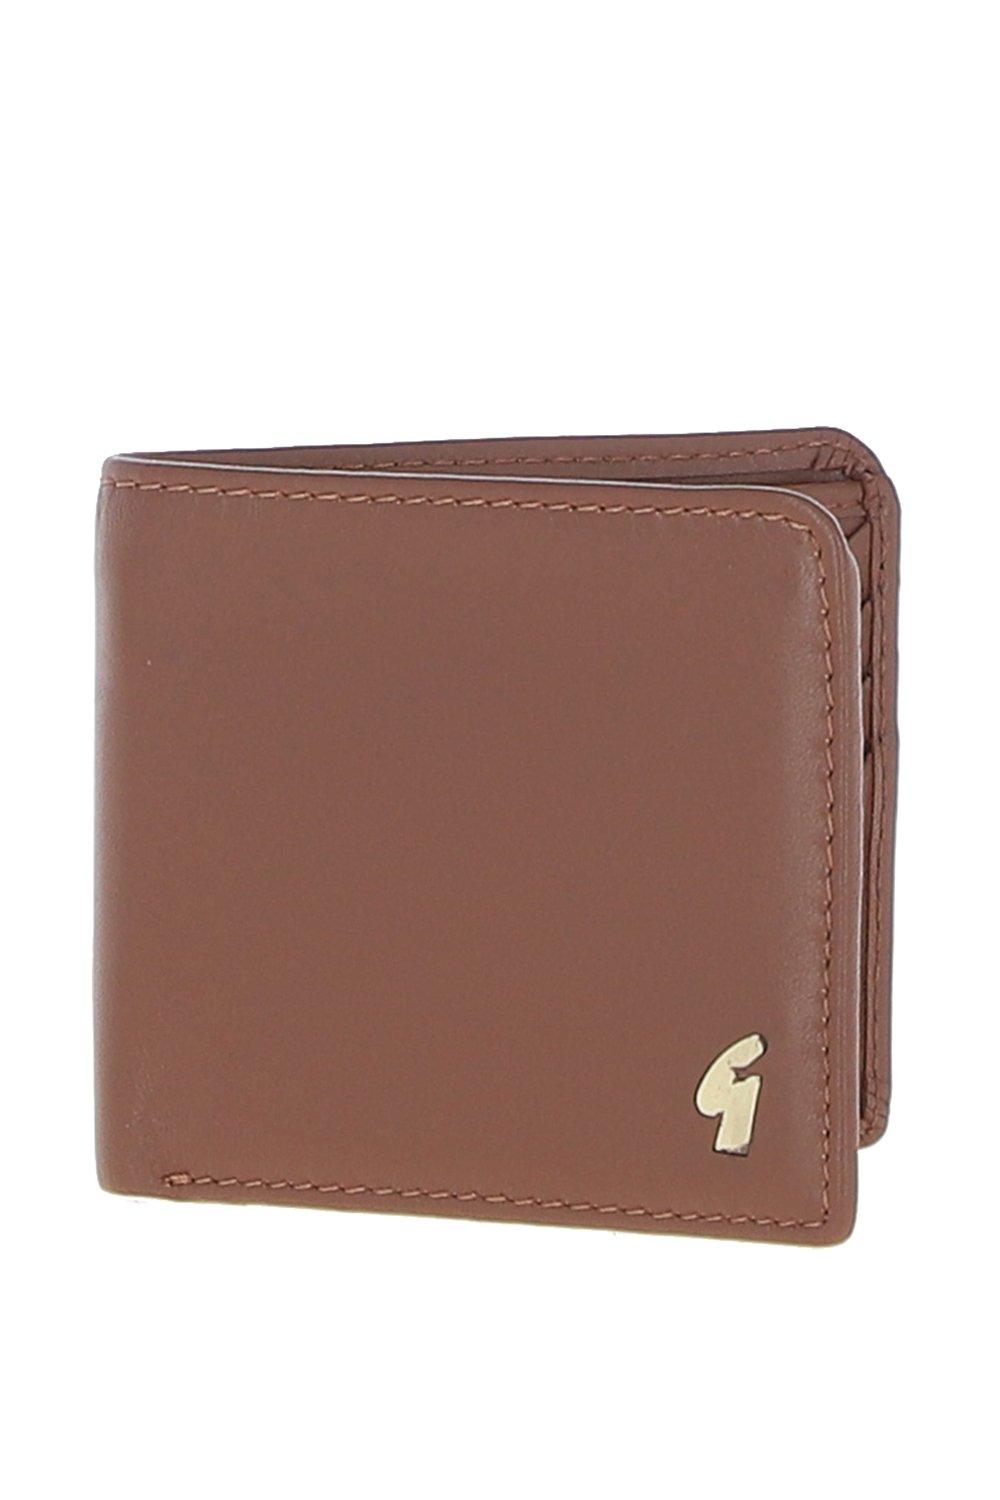 Классический кошелек '801' из натуральной кожи на 8 карточек GABICCI, коричневый мужской клатч кошелек из натуральной кожи длинный бумажник для сотового телефона простая многофункциональная деловая сумка на молнии из